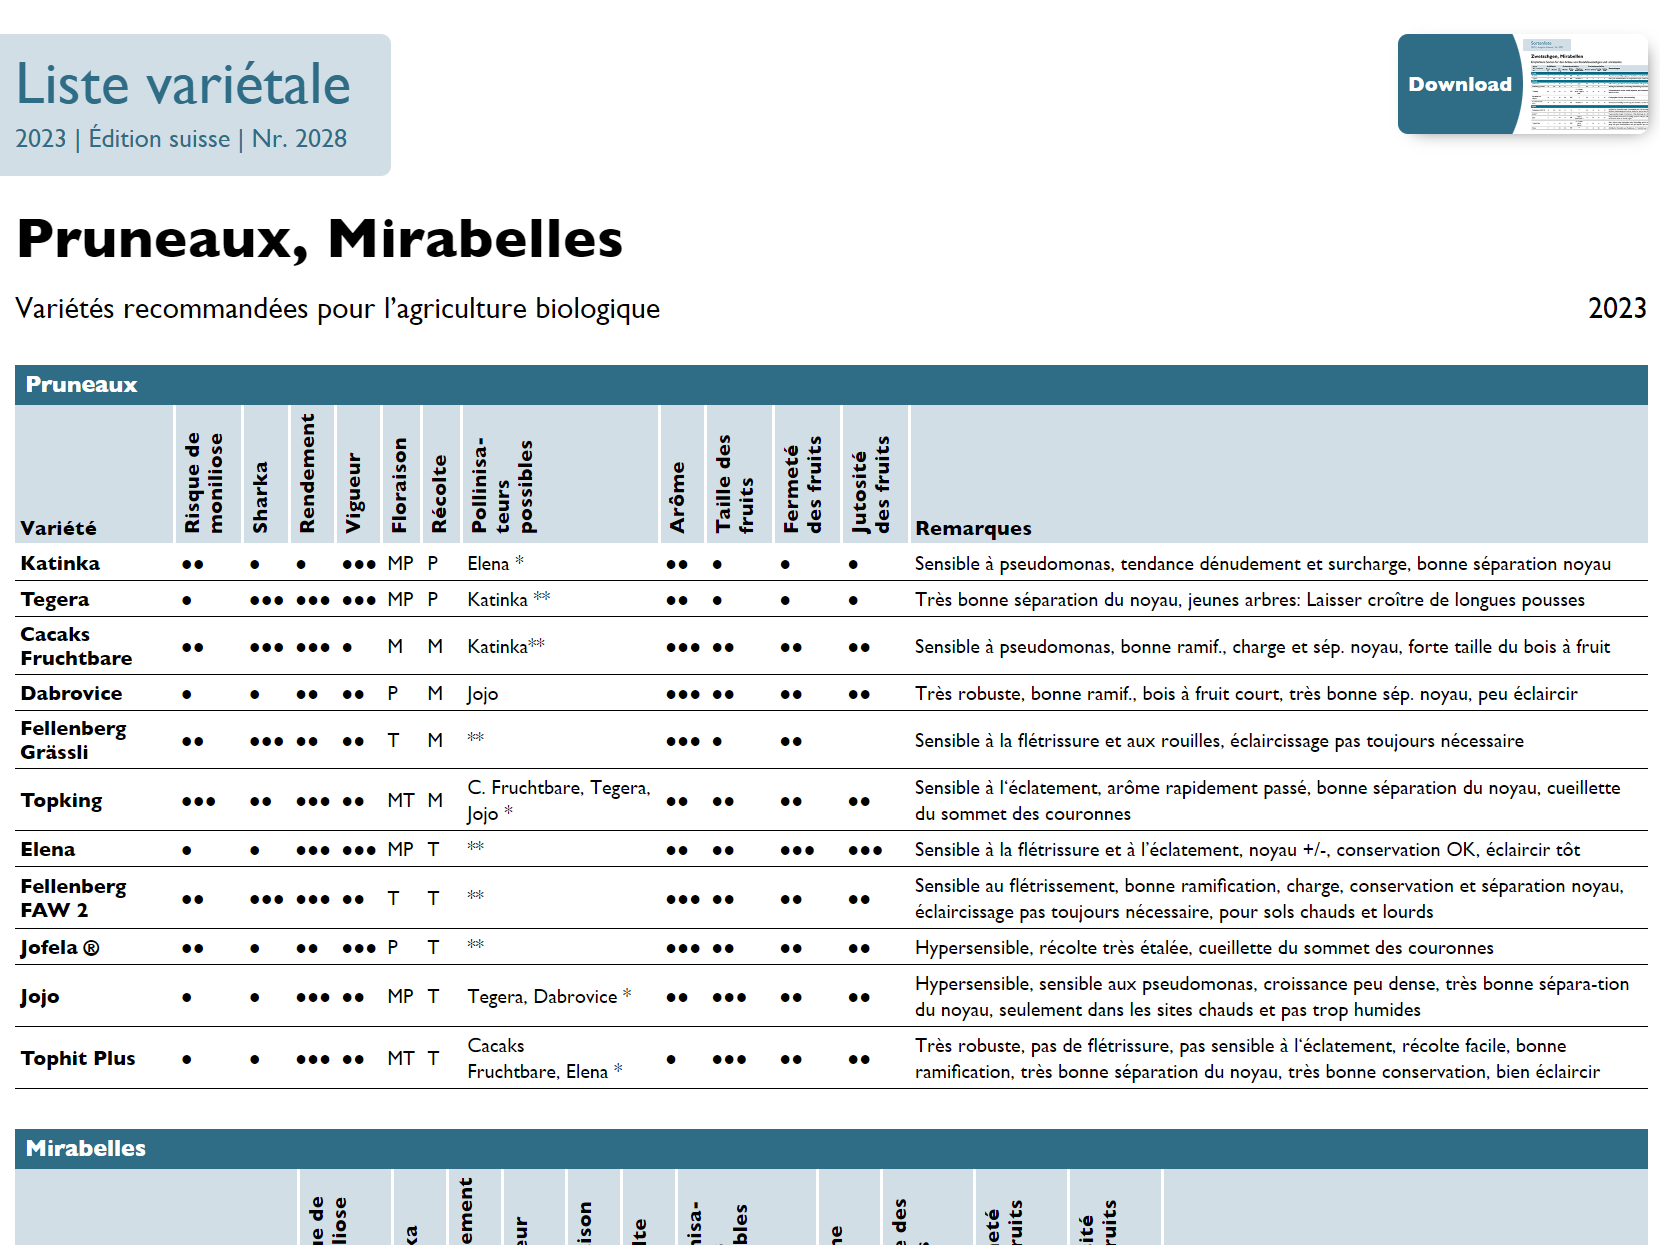 Cover: Pruneaux et Mirabelles bio